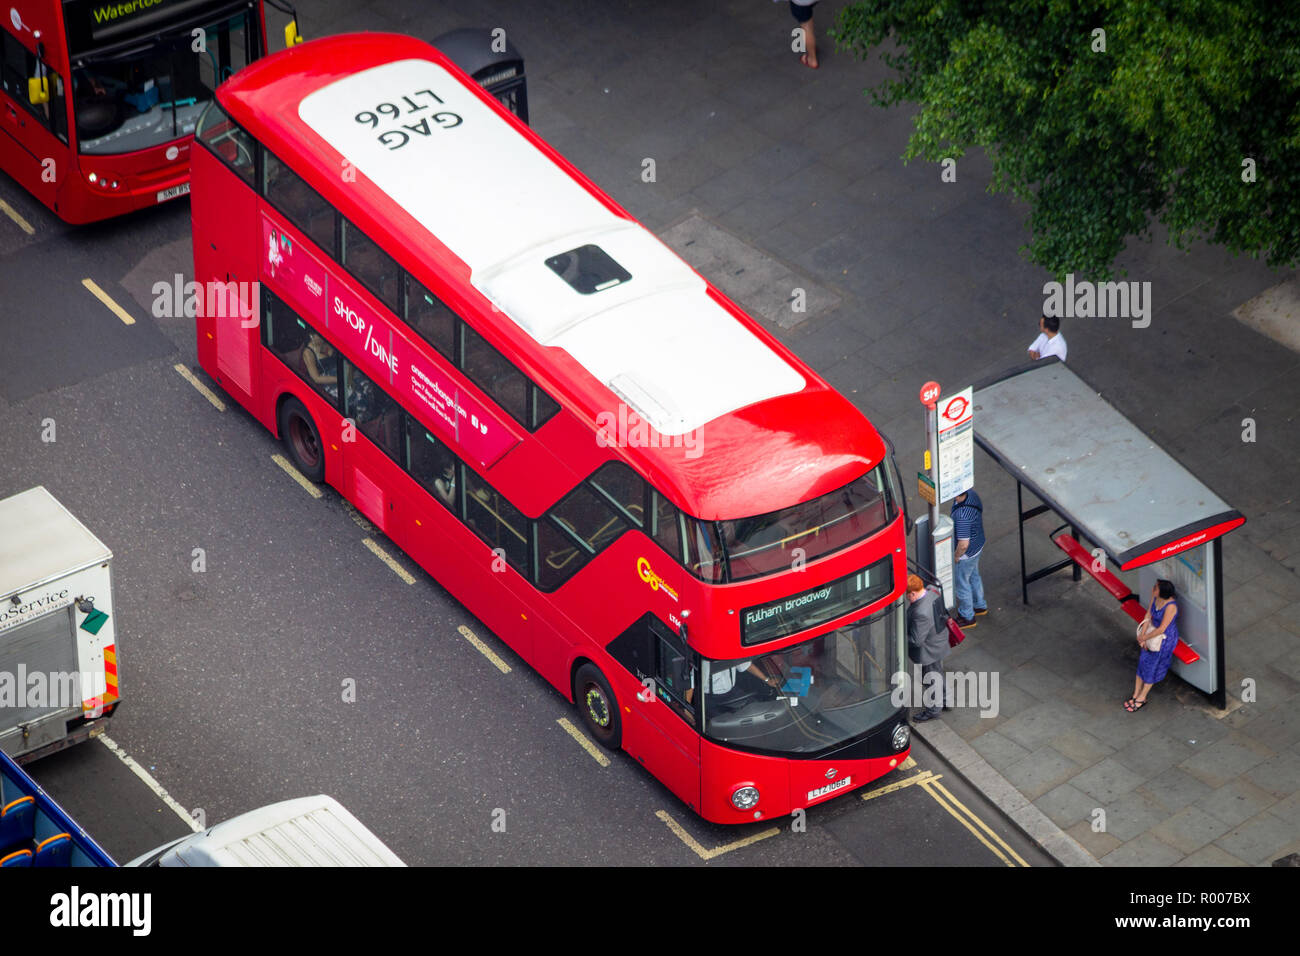 LONDON - JUL 01, 2015: A Double-decker bus on the street in London Stock Photo